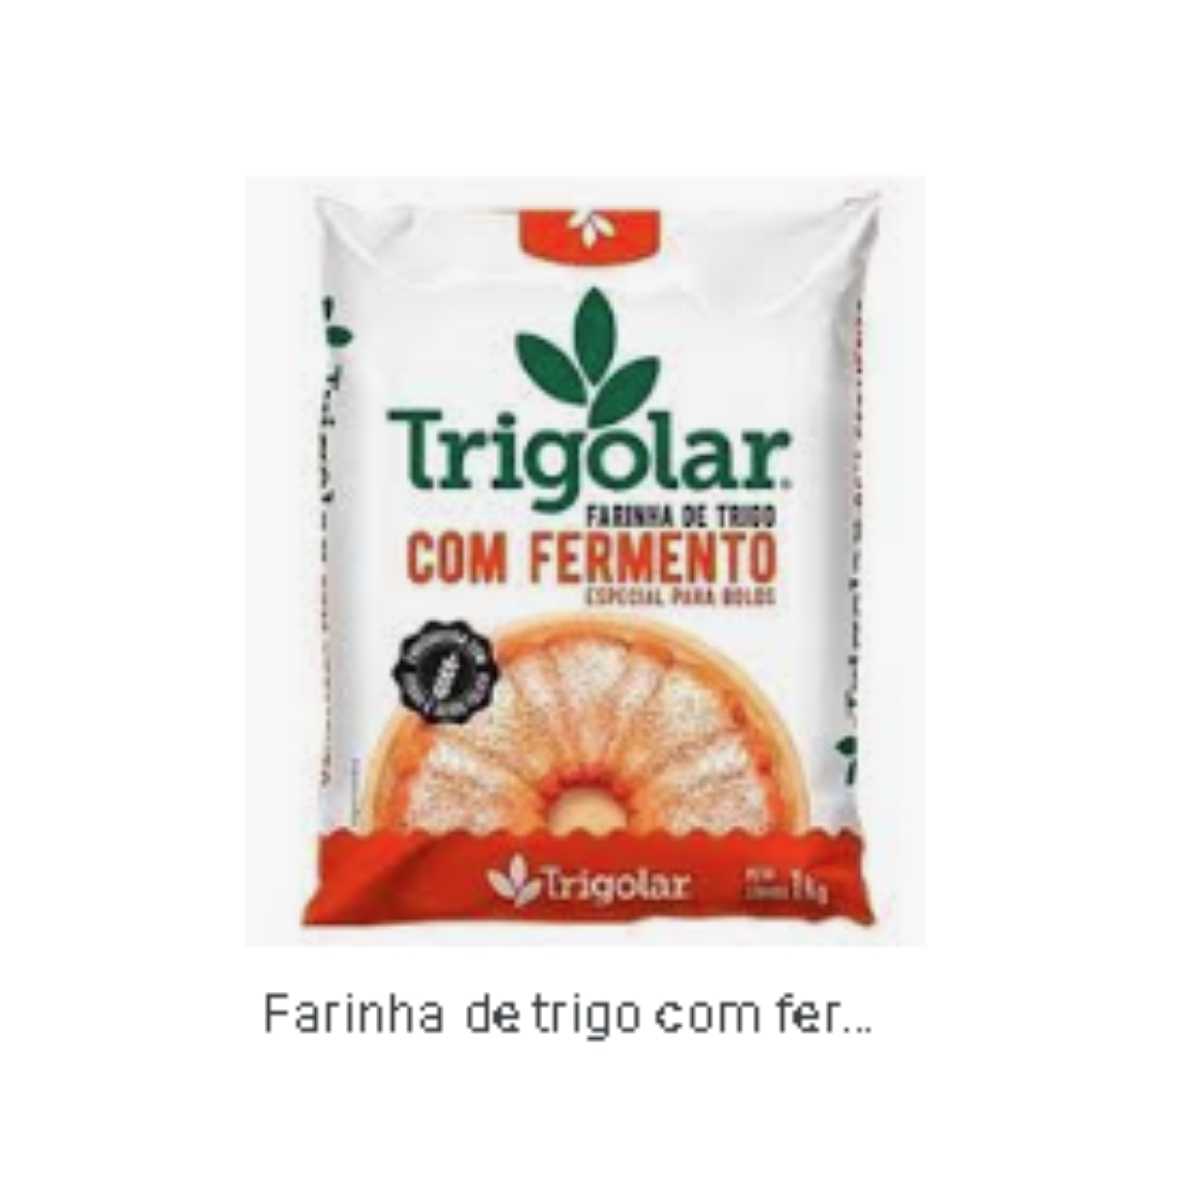 farinha-trigo-ferm-trigolar-1kg-1.jpg